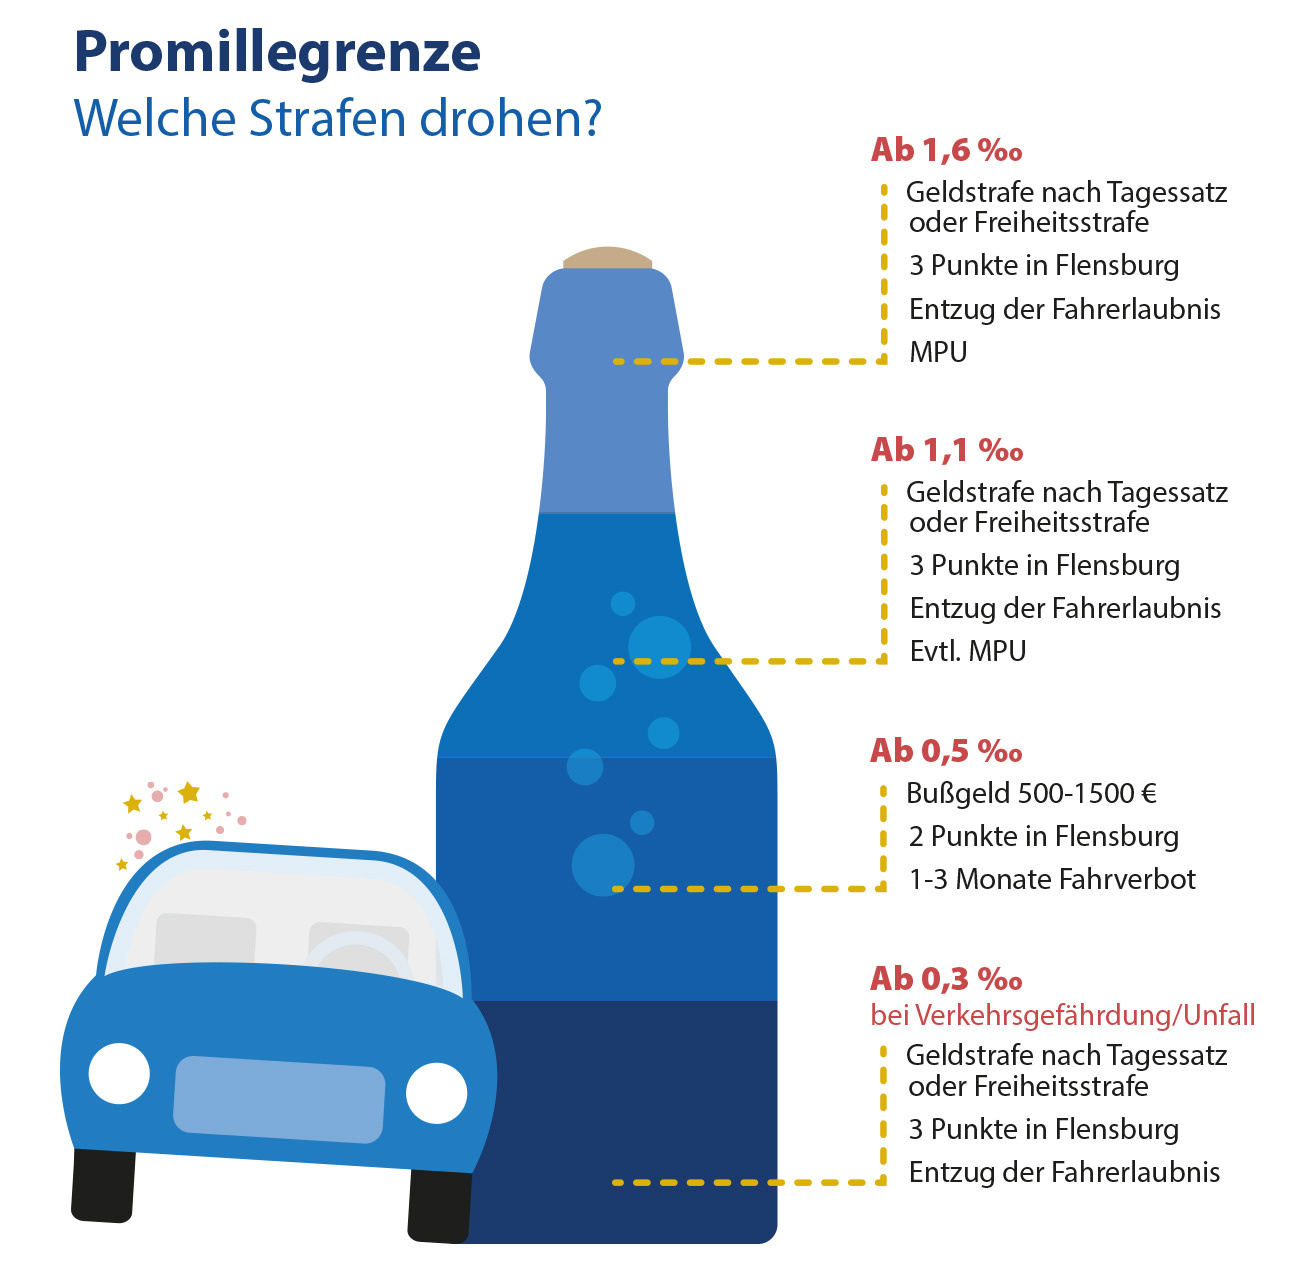 Promillegrenze Alkohol: Was ist erlaubt & Strafen